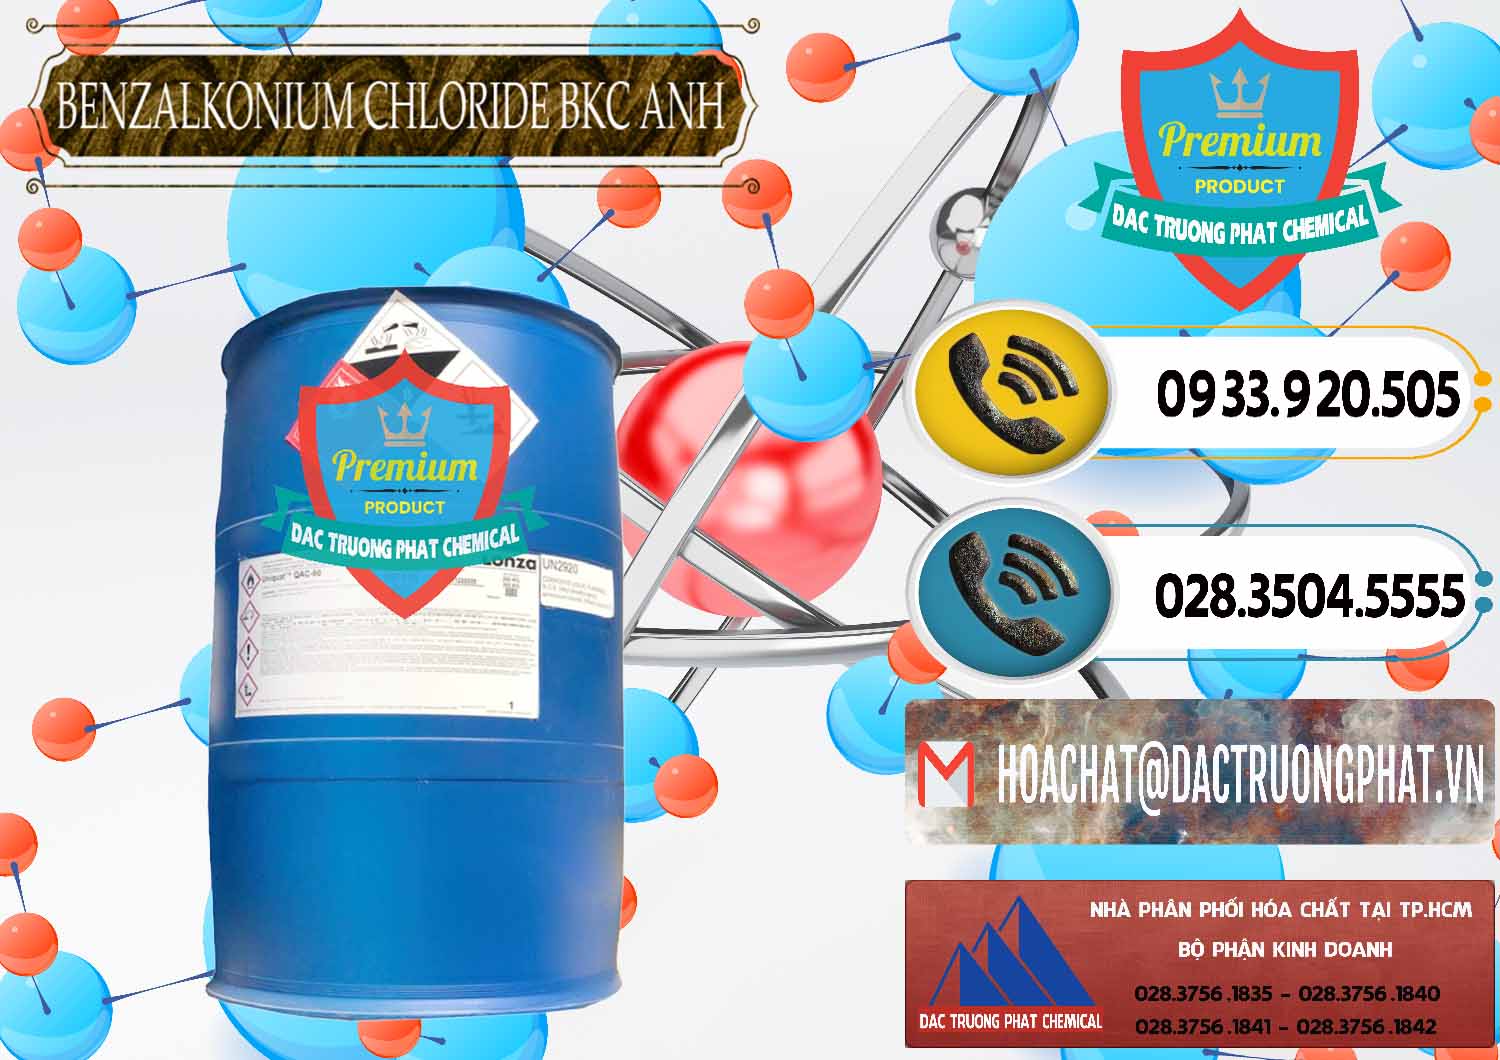 Đơn vị chuyên kinh doanh và bán BKC - Benzalkonium Chloride 80% Anh Quốc Uk Kingdoms - 0457 - Cty bán và cung cấp hóa chất tại TP.HCM - hoachatdetnhuom.vn